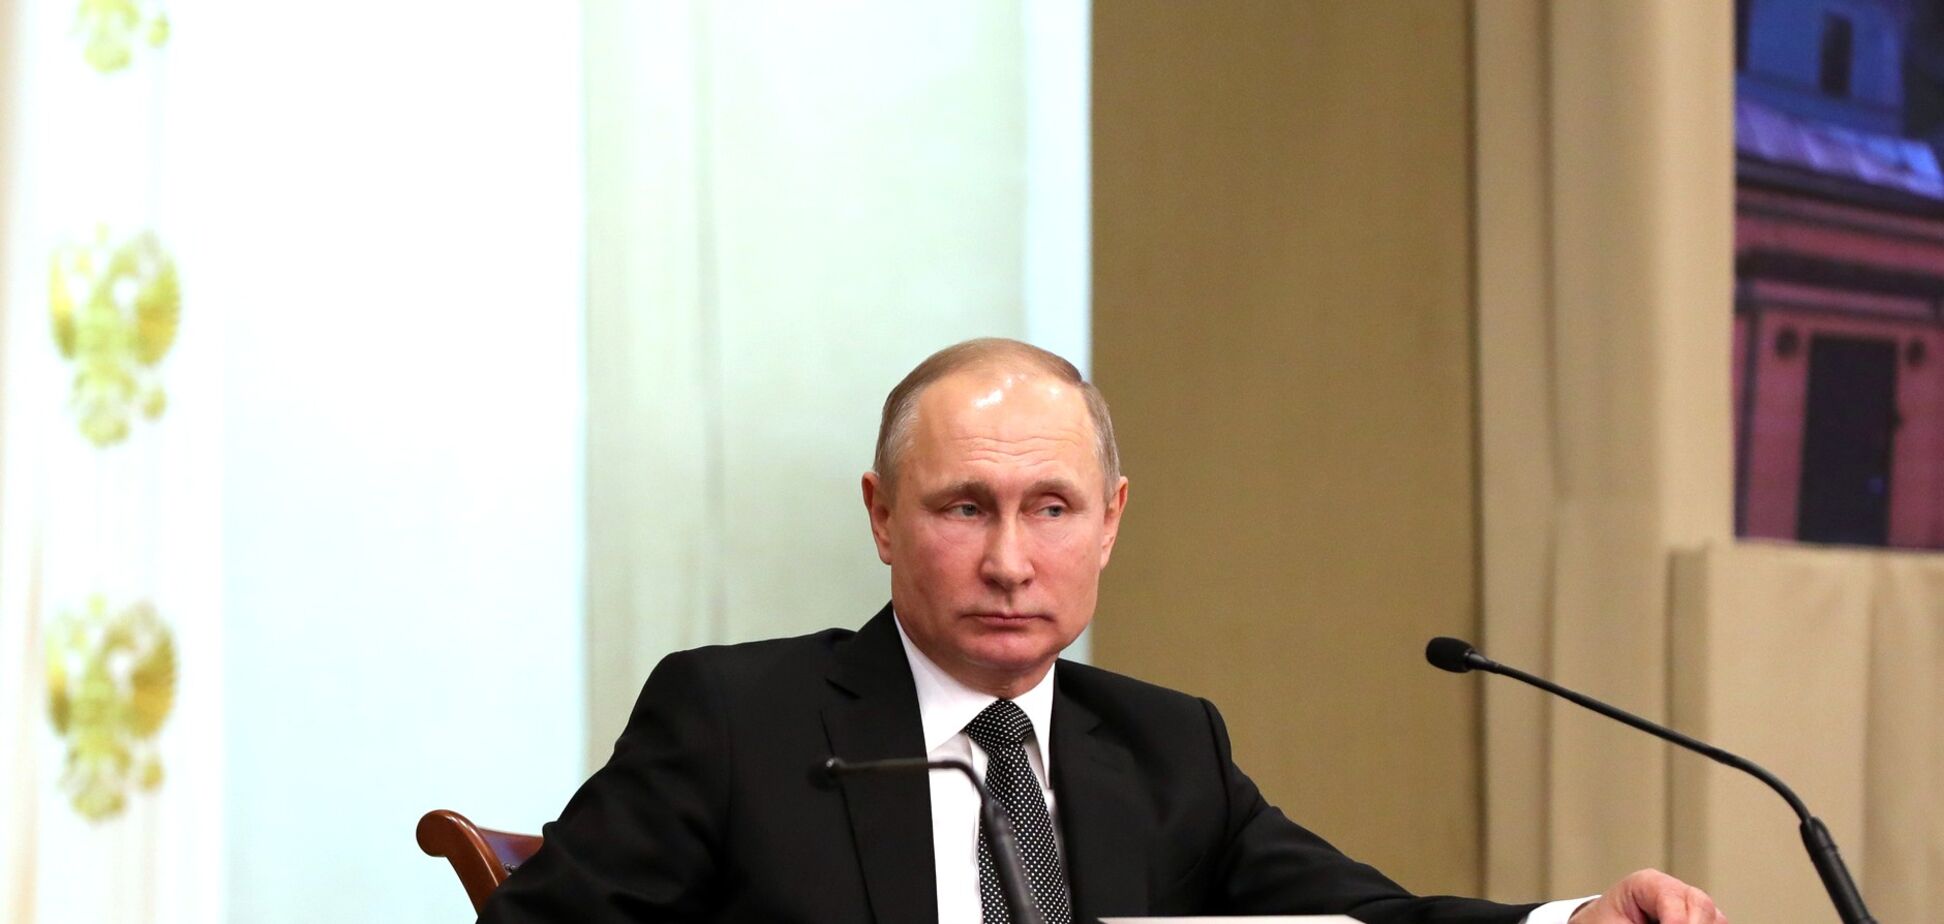 Откажется от обещания: разведка США спрогнозировала Путину жесткий год